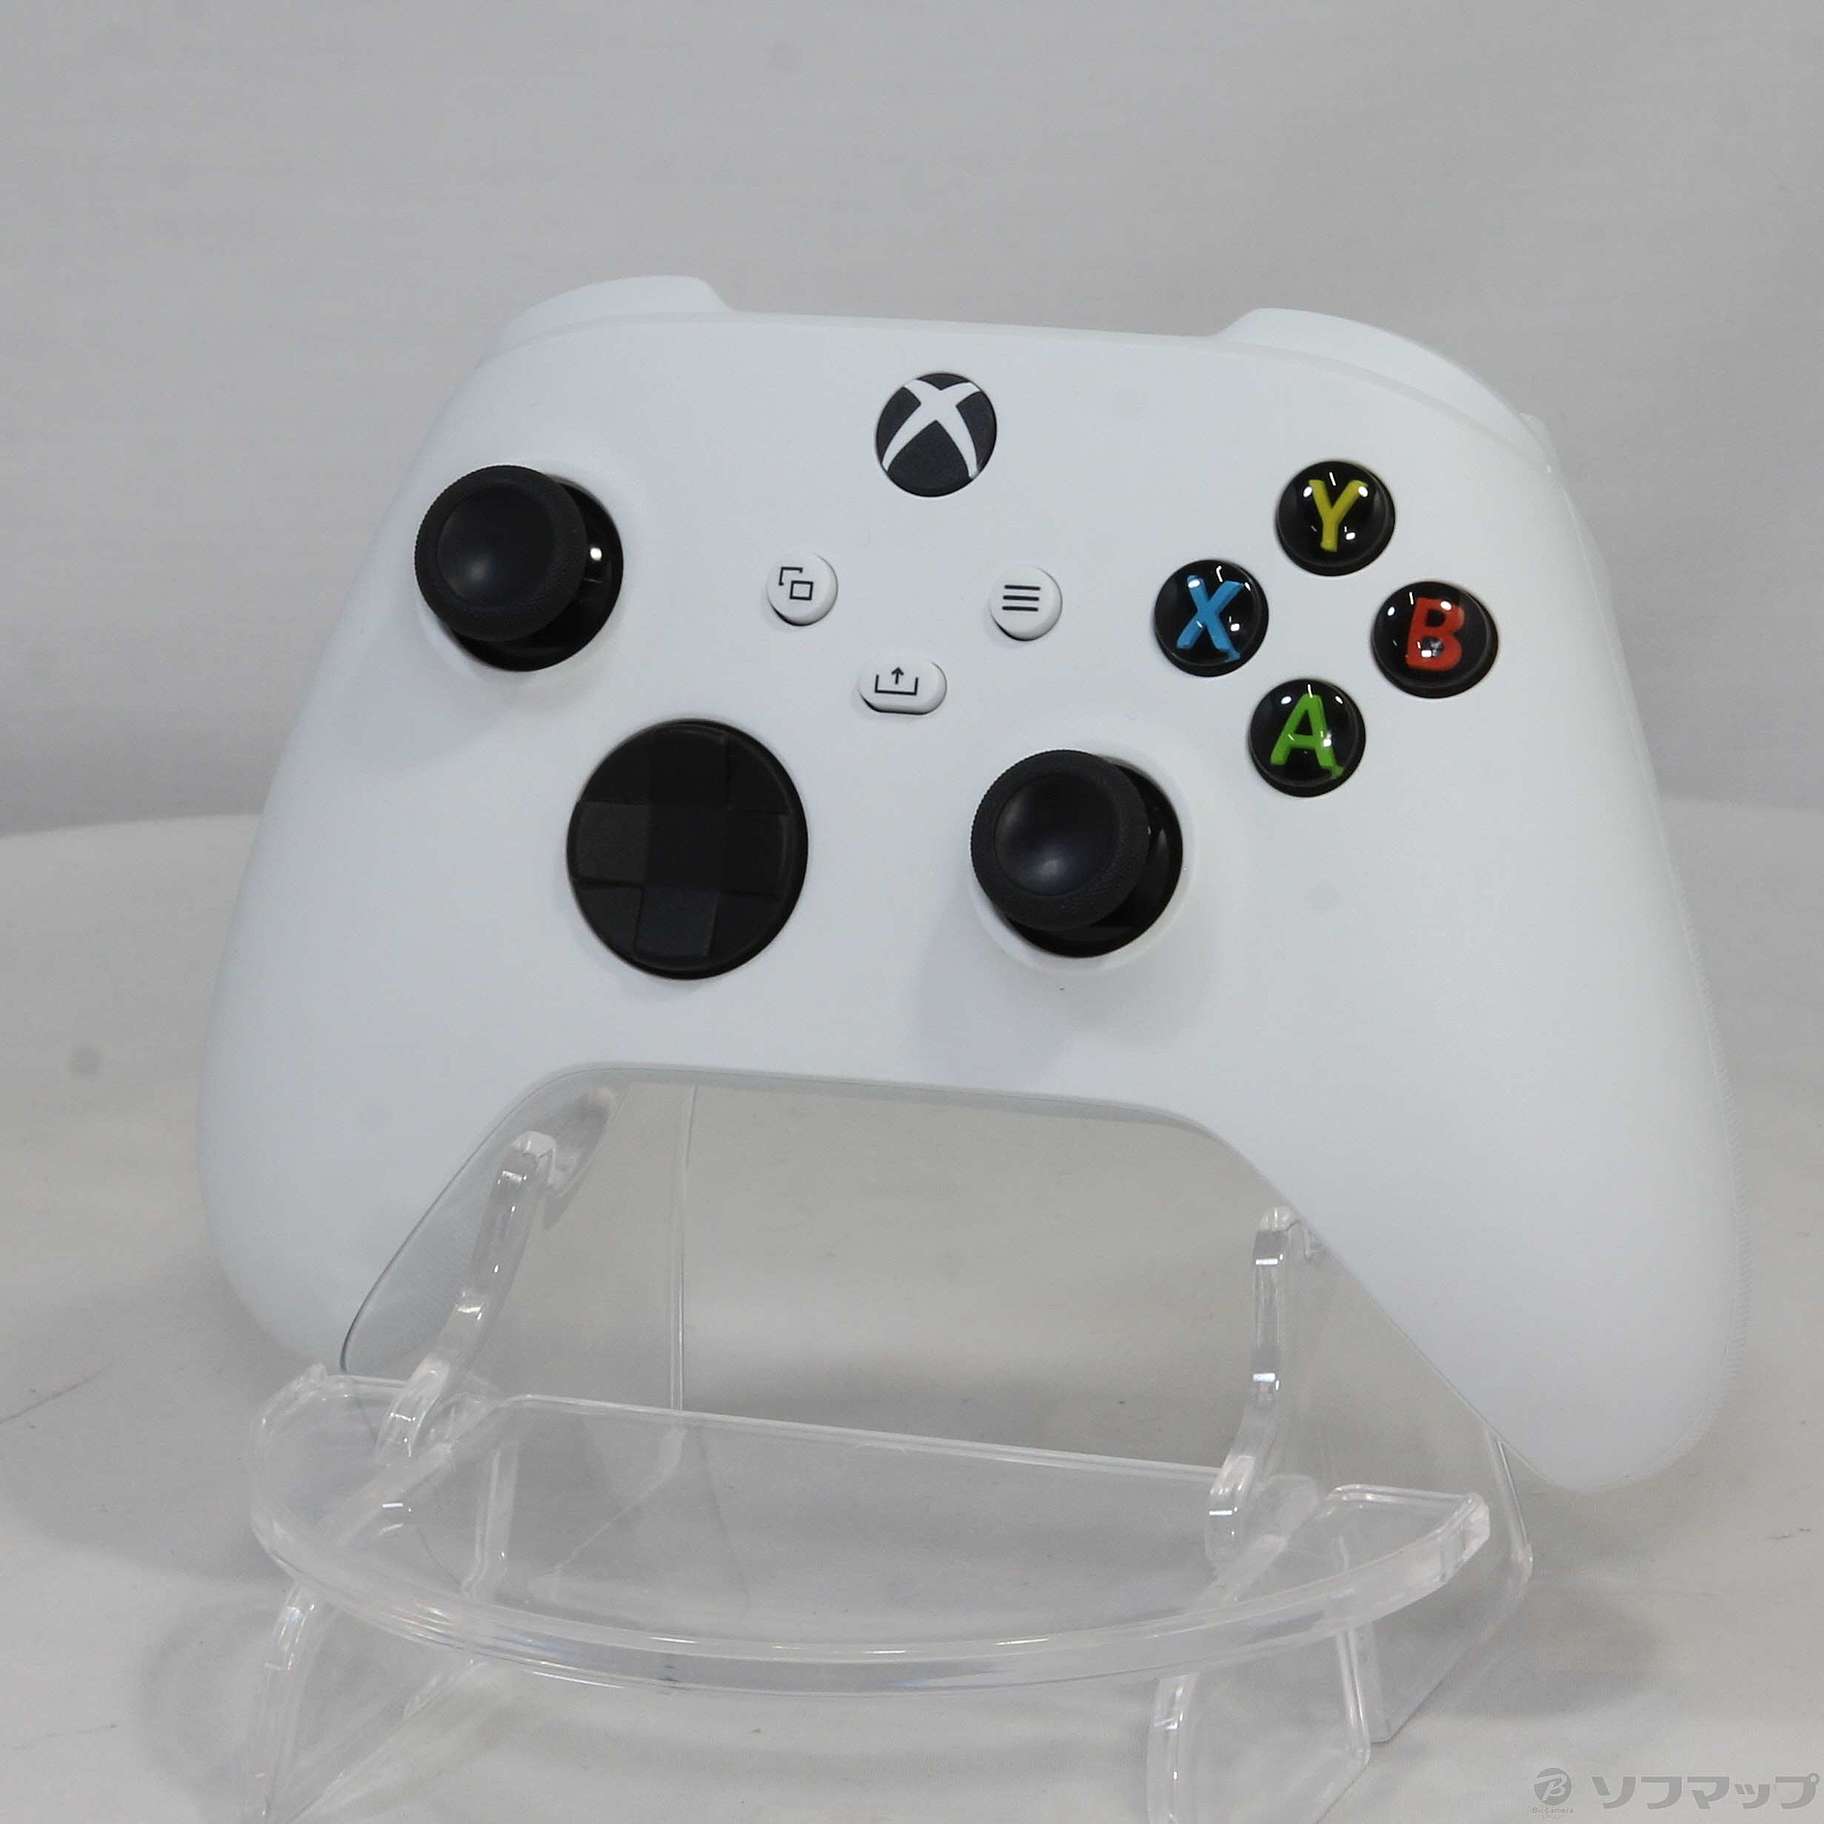 Xbox ワイヤレスコントローラー ロボットホワイト 【XboxSeriesX XboxSeriesS XboxOne】